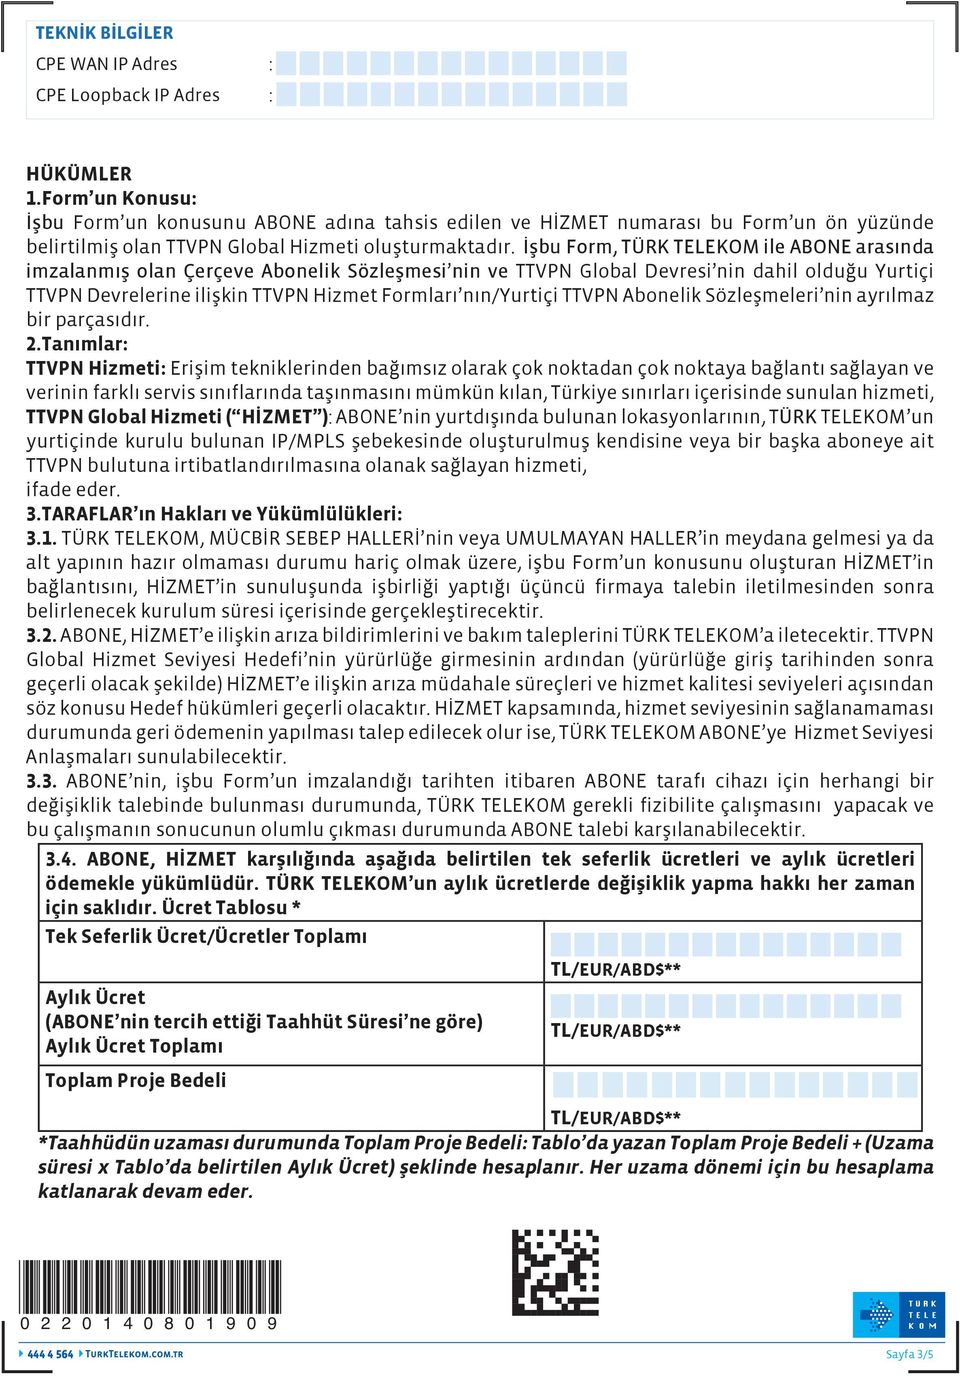 İşbu Form, TÜRK TELEKOM ile ABONE arasında imzalanmış olan Çerçeve Abonelik Sözleşmesi nin ve TTVPN Global Devresi nin dahil olduğu Yurtiçi TTVPN Devrelerine ilişkin TTVPN Hizmet Formları nın/yurtiçi